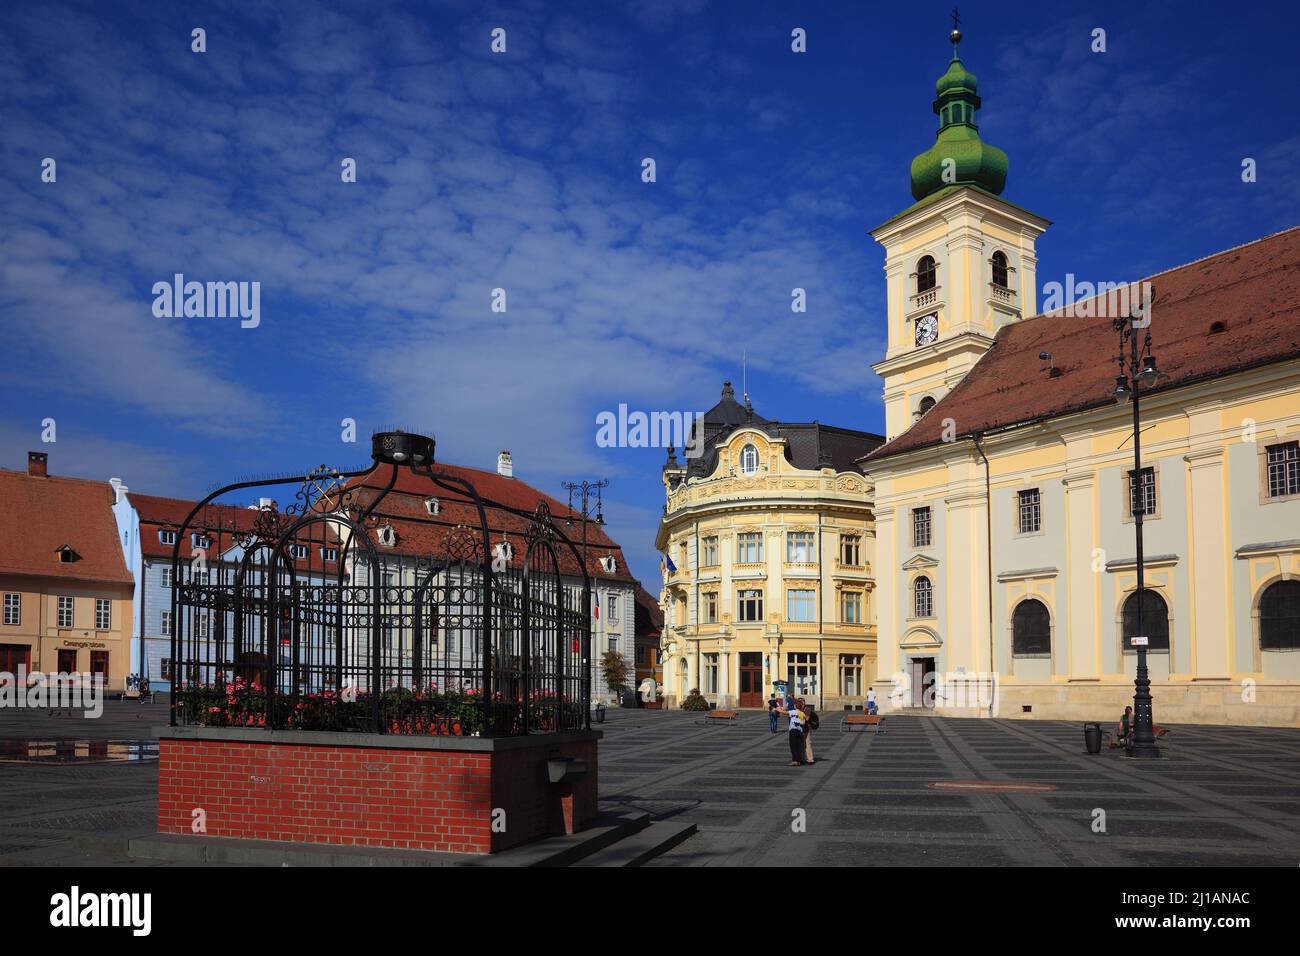 Blick von Piata Mare, großer Ring, über den Marktbrunnen auf das historische Rathaus und katholische Kirche, Sibiu, Rumänien / vue de Piata Mare, Banque D'Images